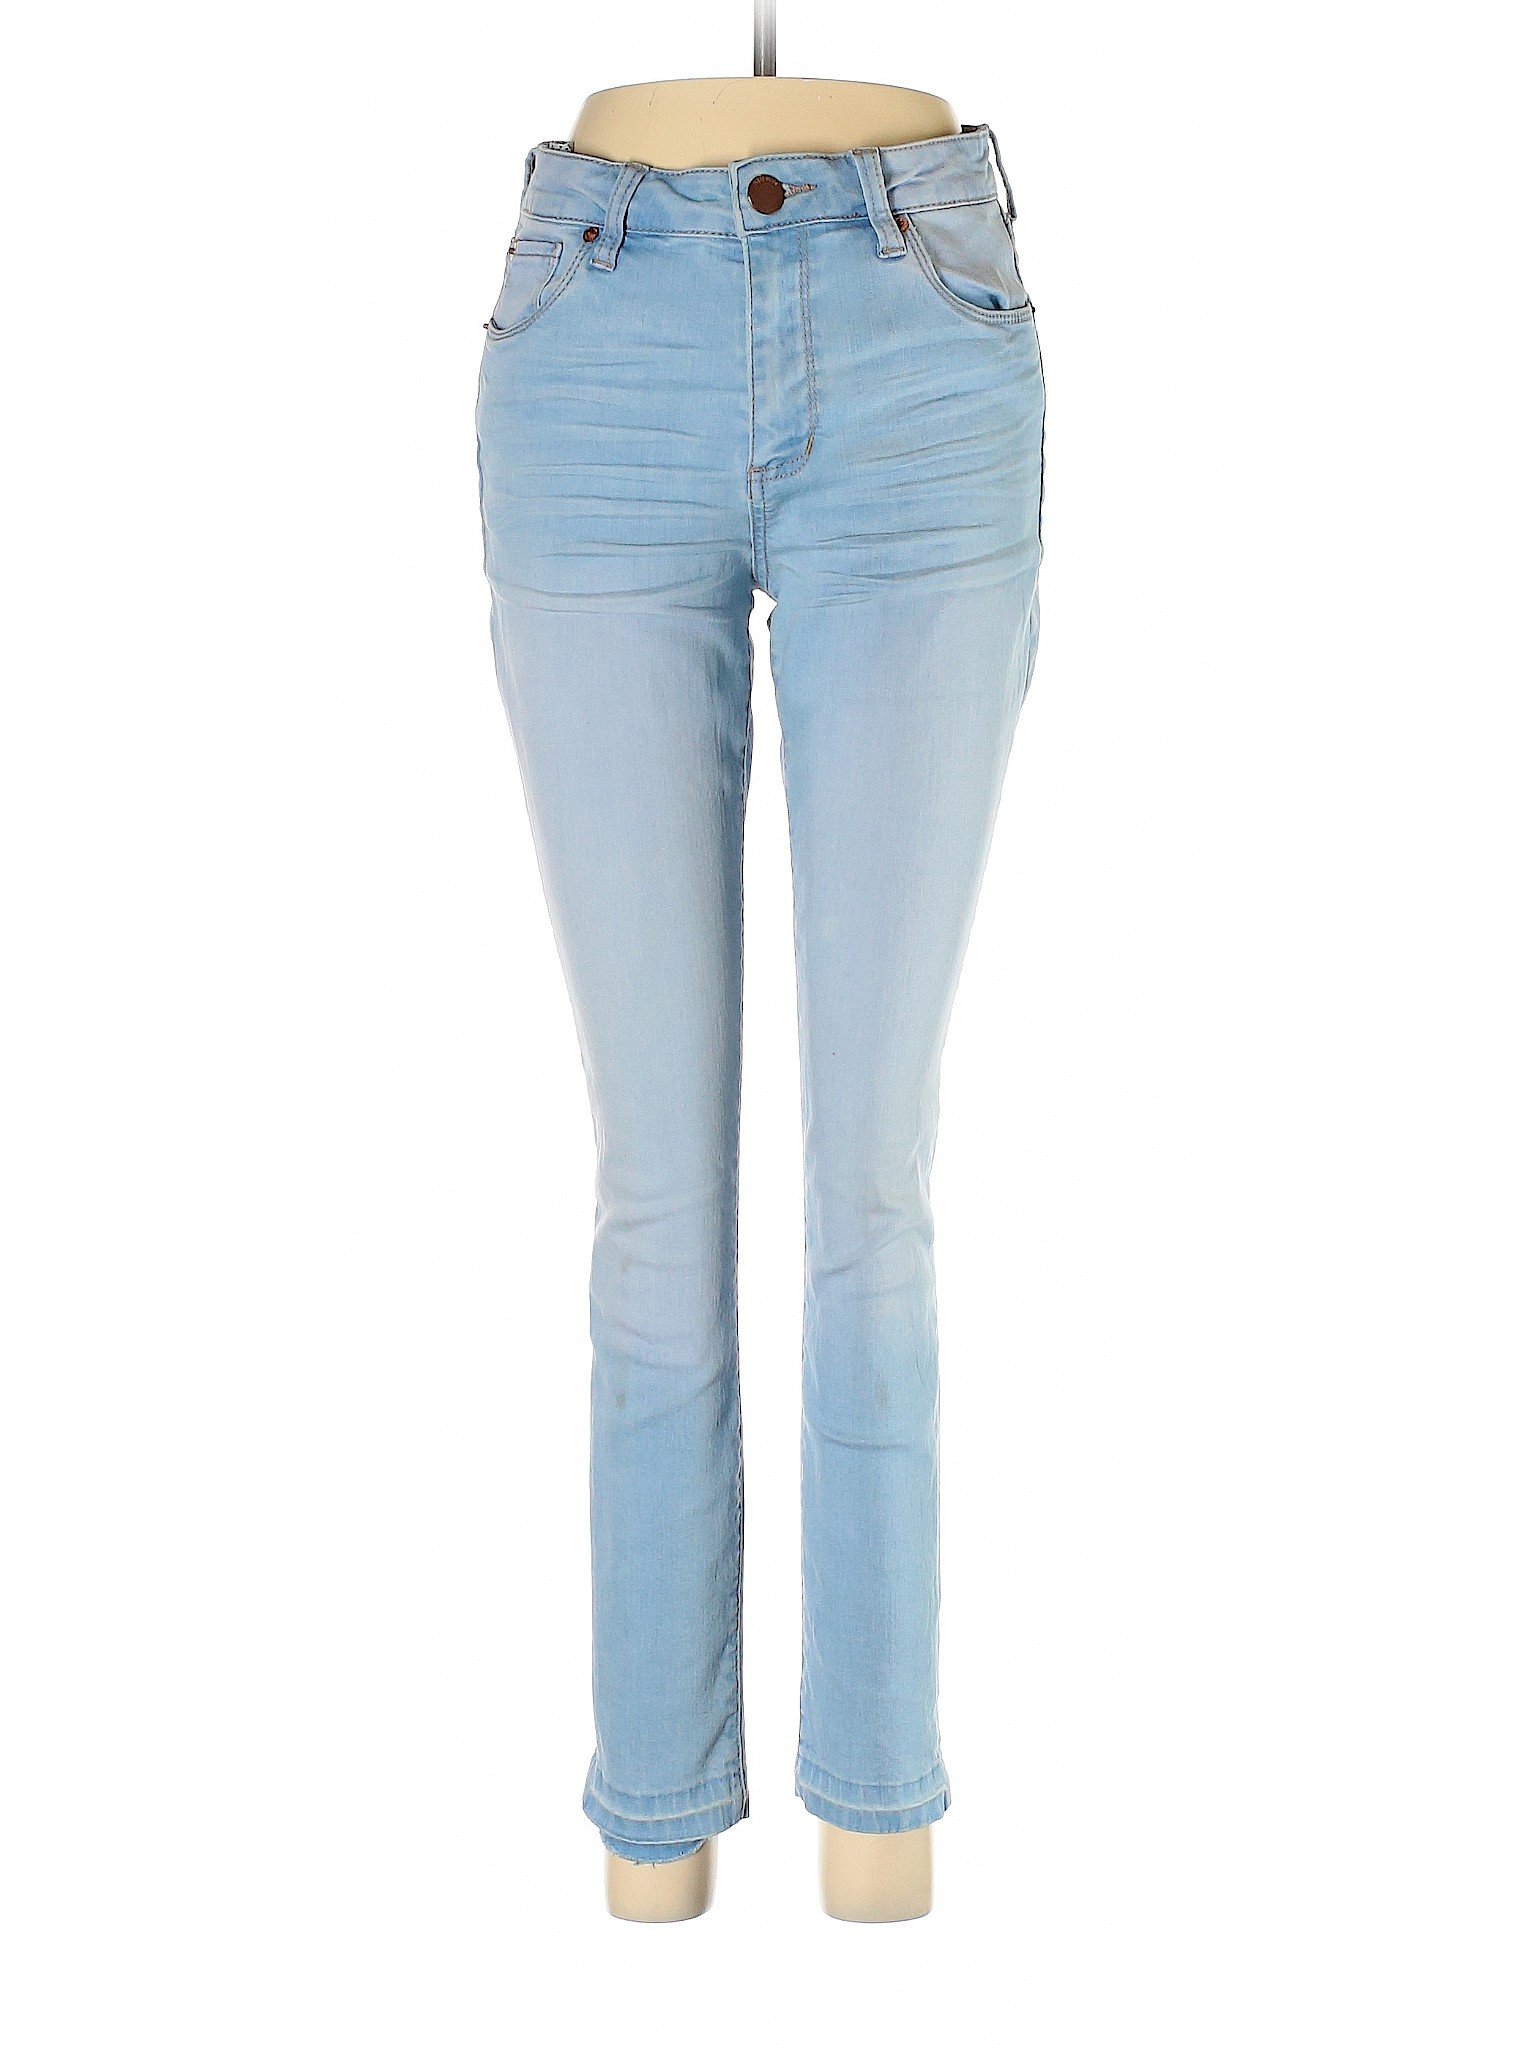 STS Blue Women Blue Jeans 5 | eBay